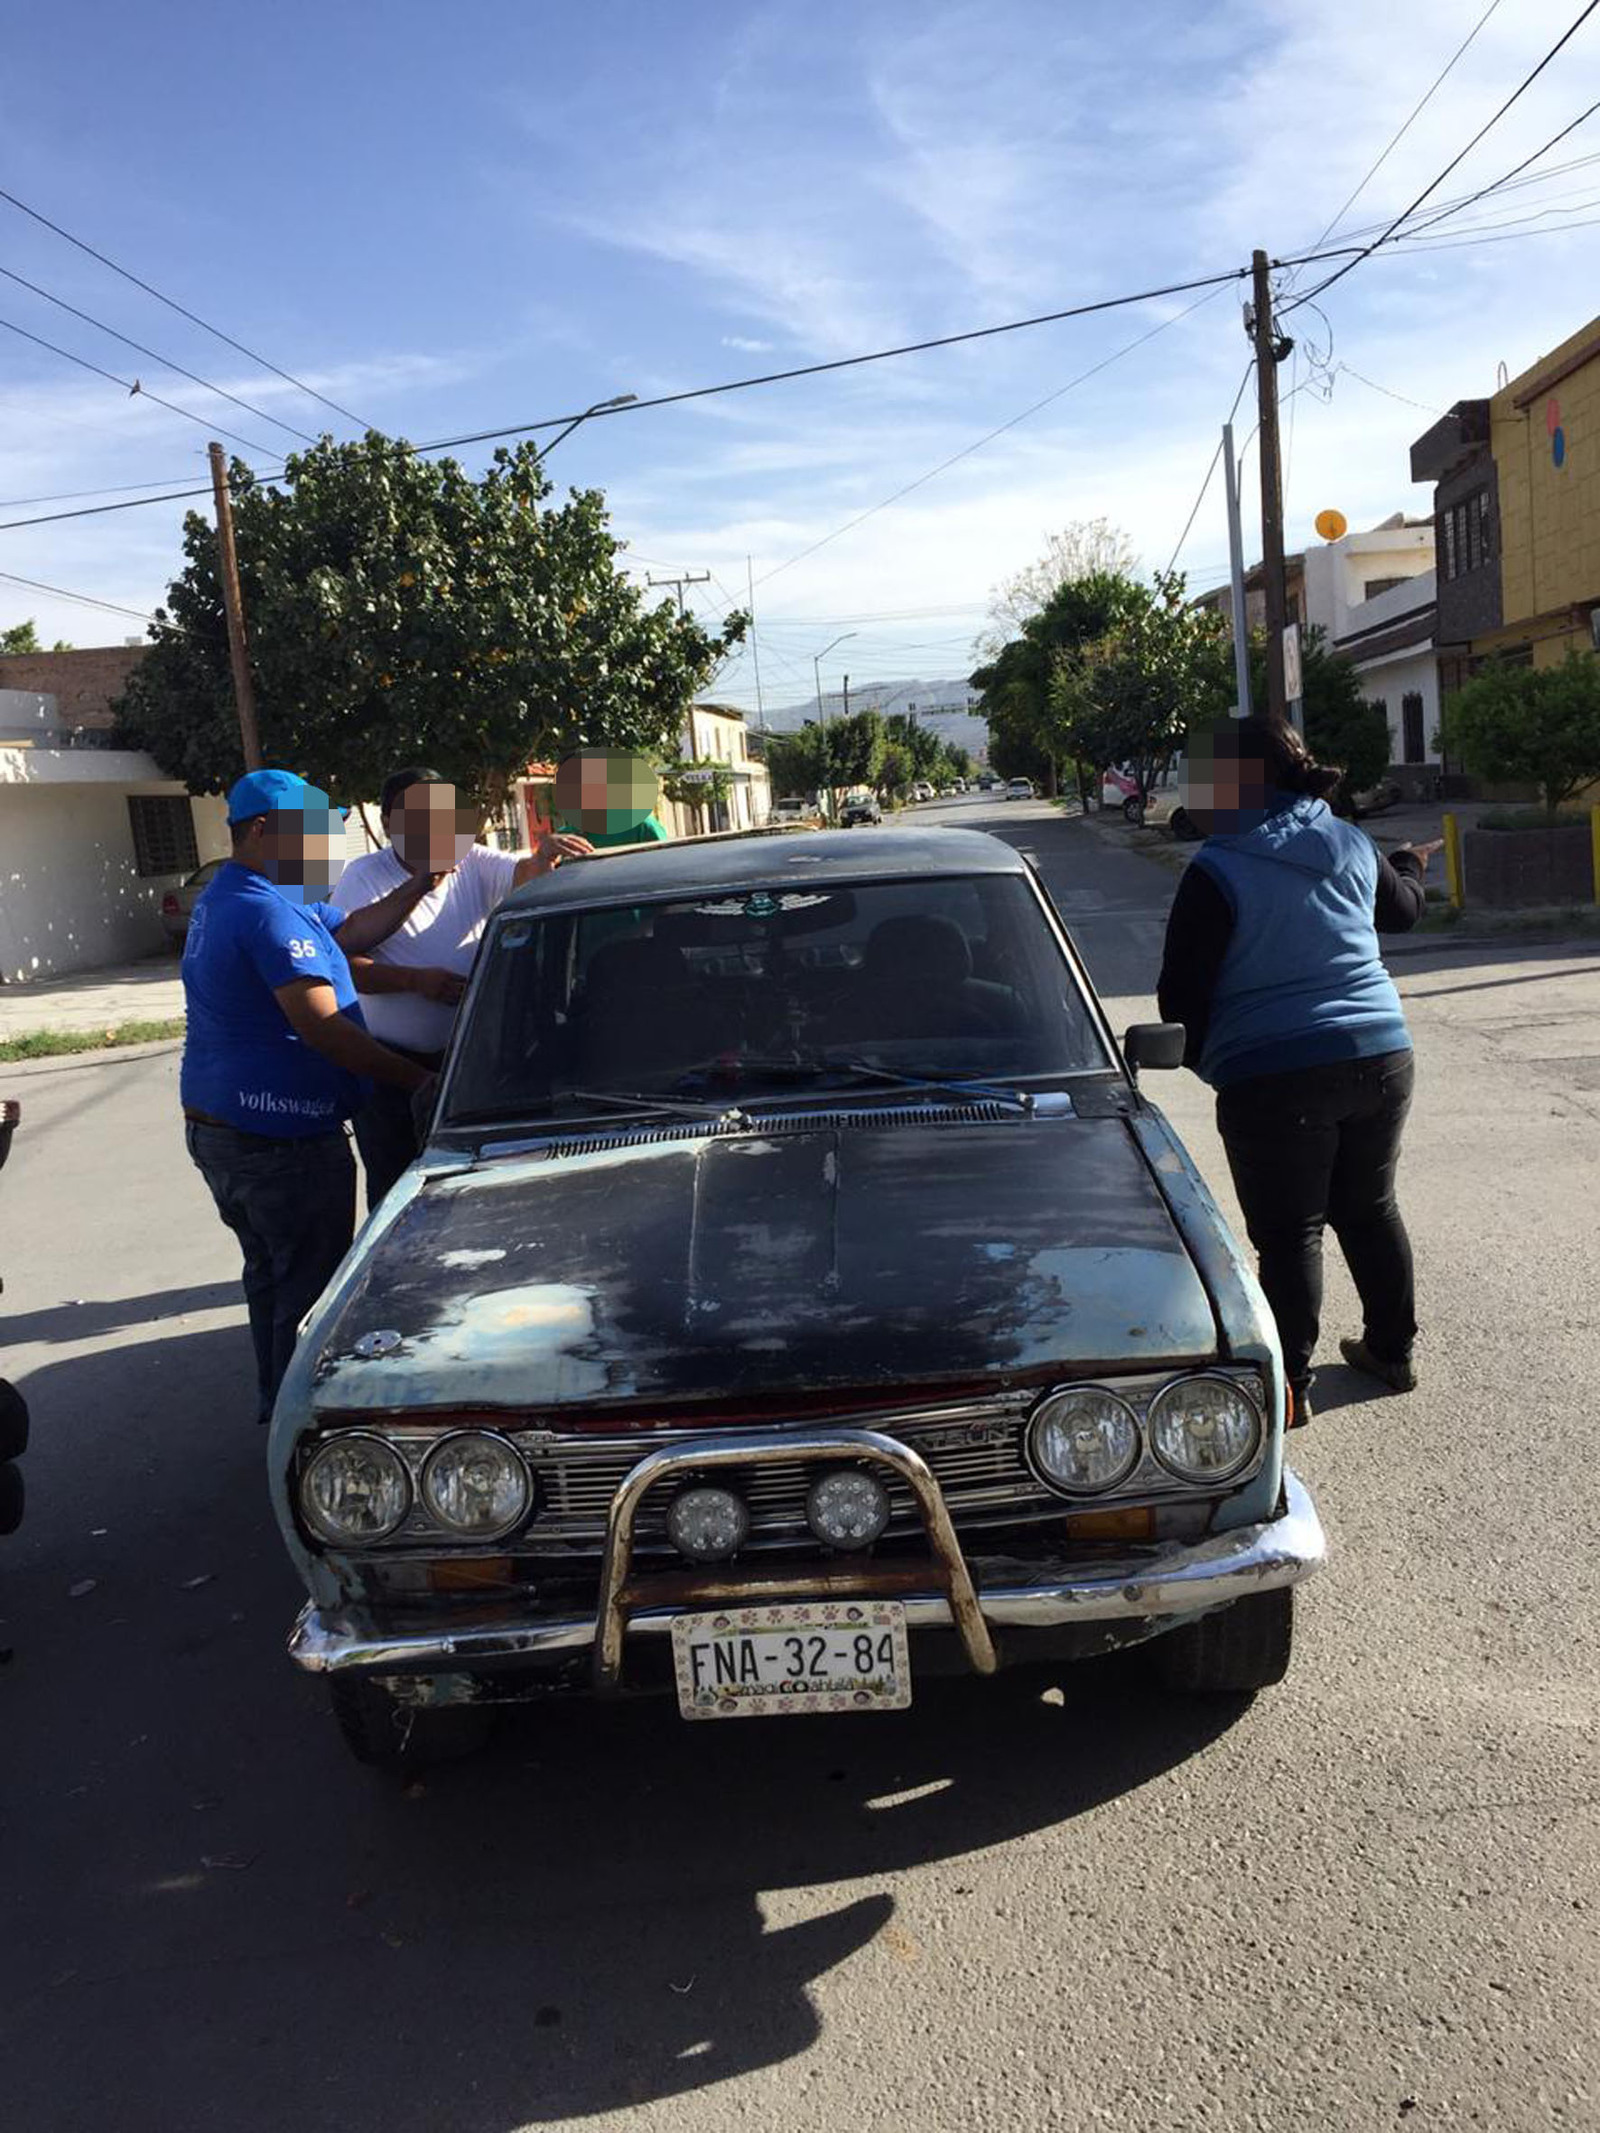 El automóvil Datsun quedó con afectaciones menores en su carrocería luego de ser impactado por la motocicleta, el percance se registró en la calle Enrique C. Treviño y la avenida Abasolo.